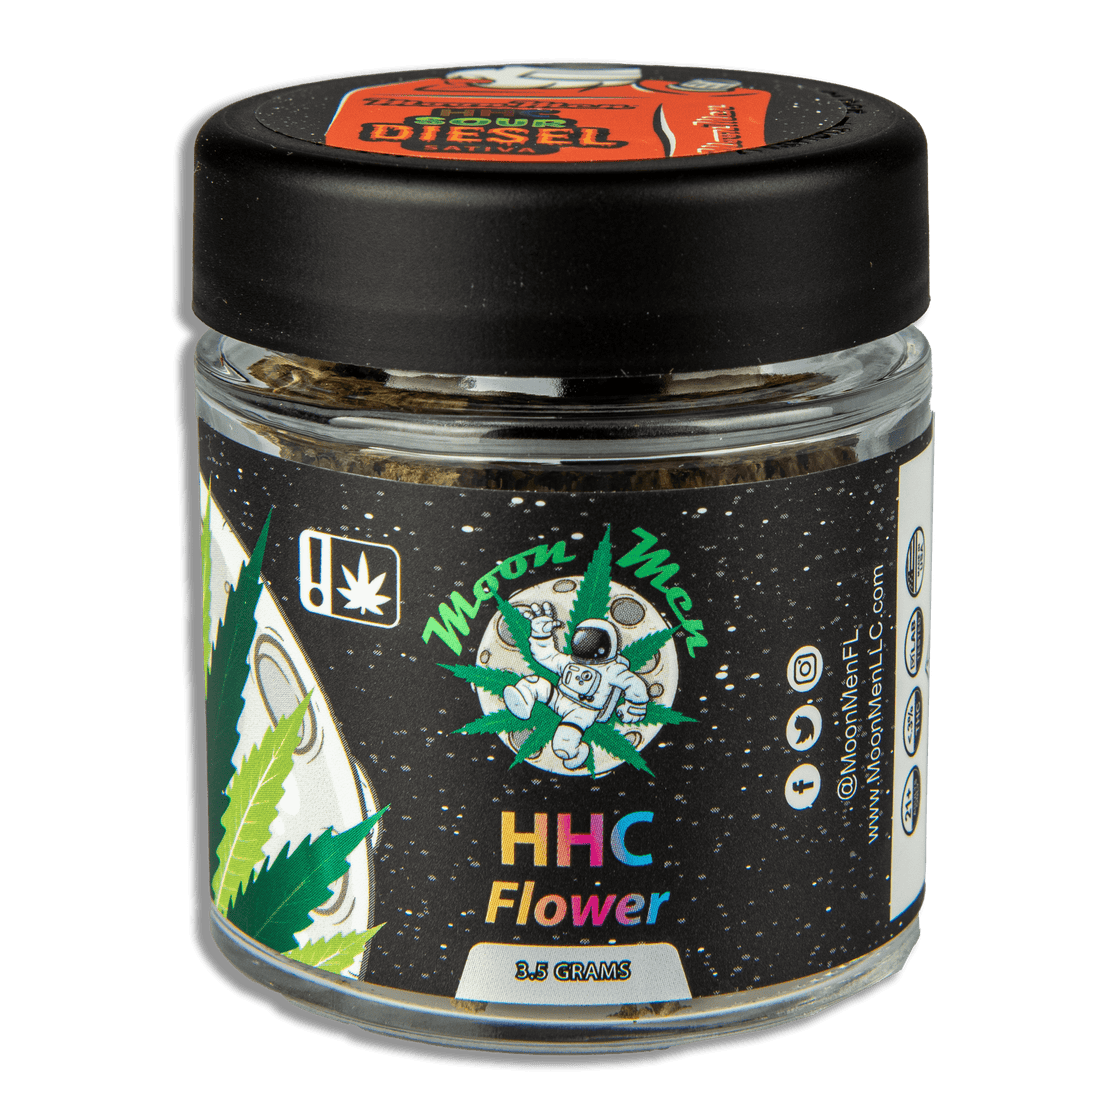 HHC Greenhouse Flower (3.5g) – Sour Diesel (Sativa)